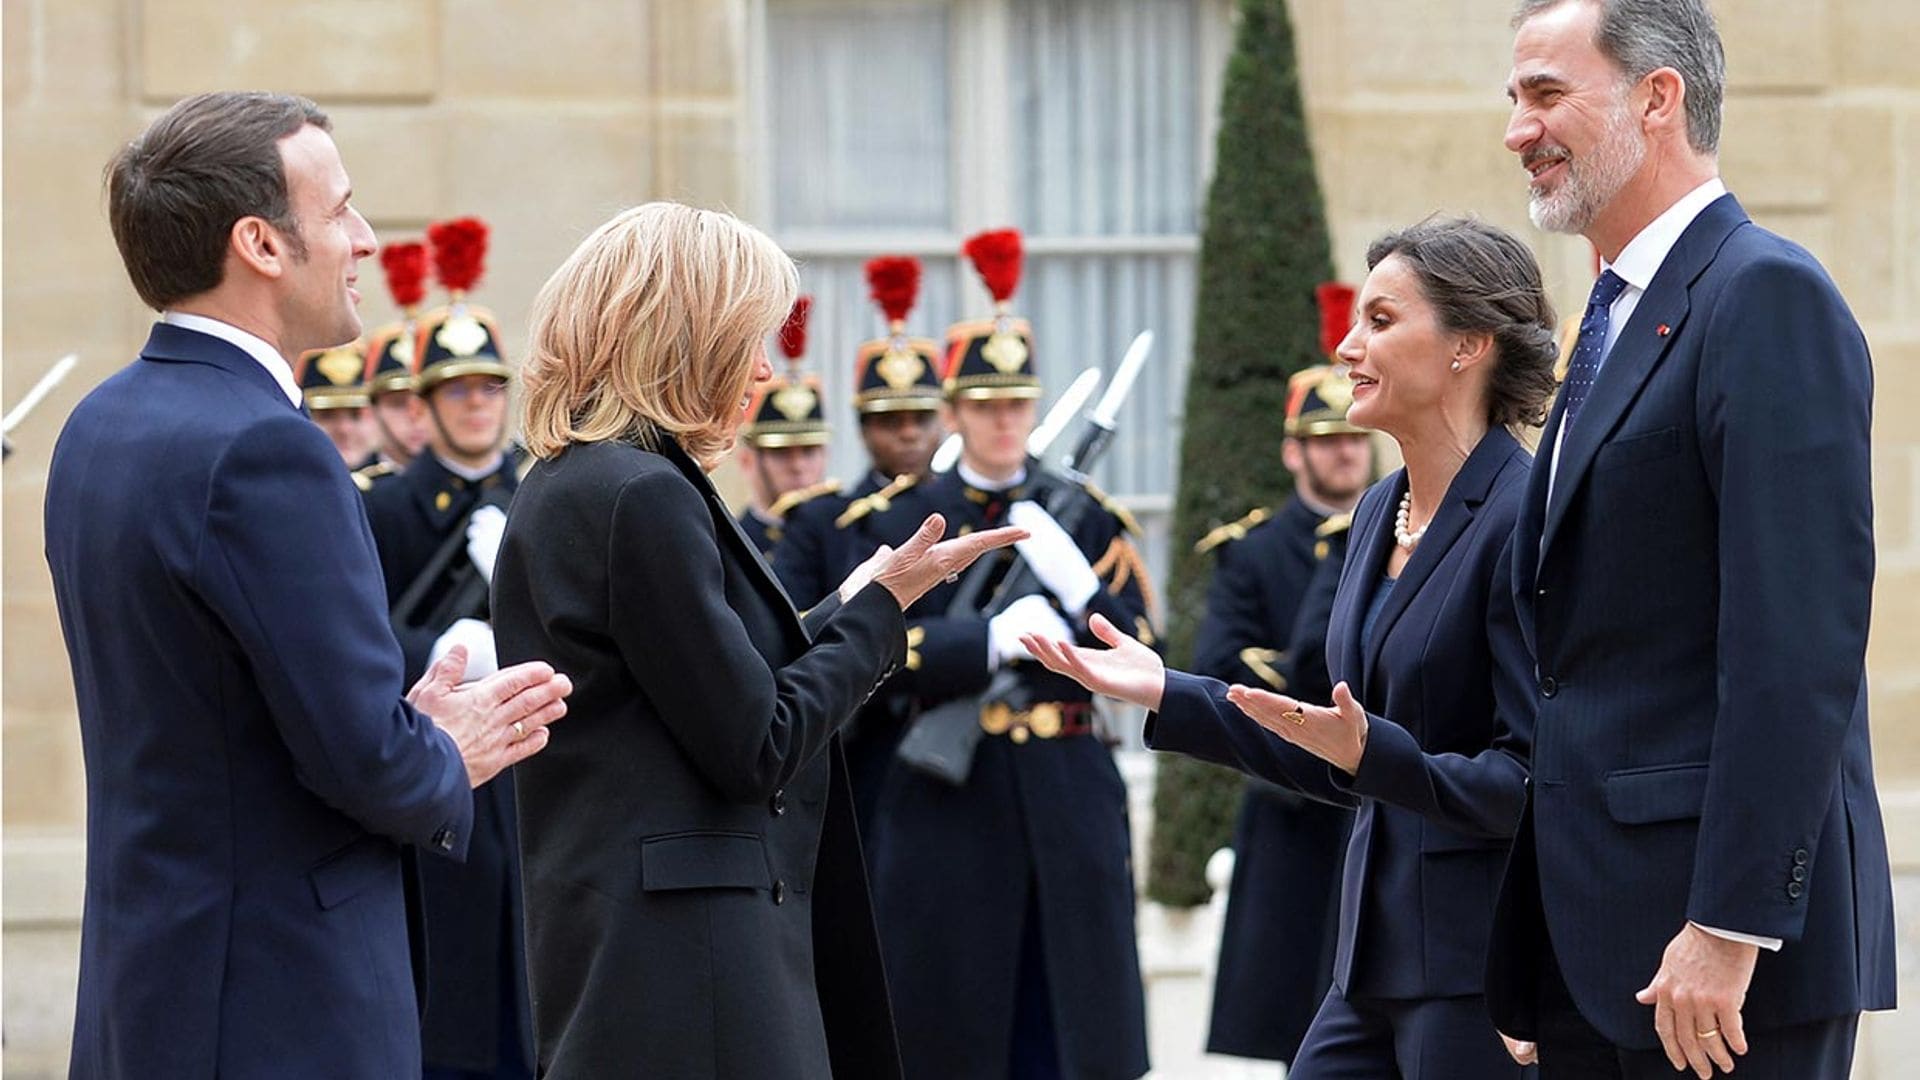 Ni apretones de manos ni besos, analizamos el encuentro de los Reyes con los Macron